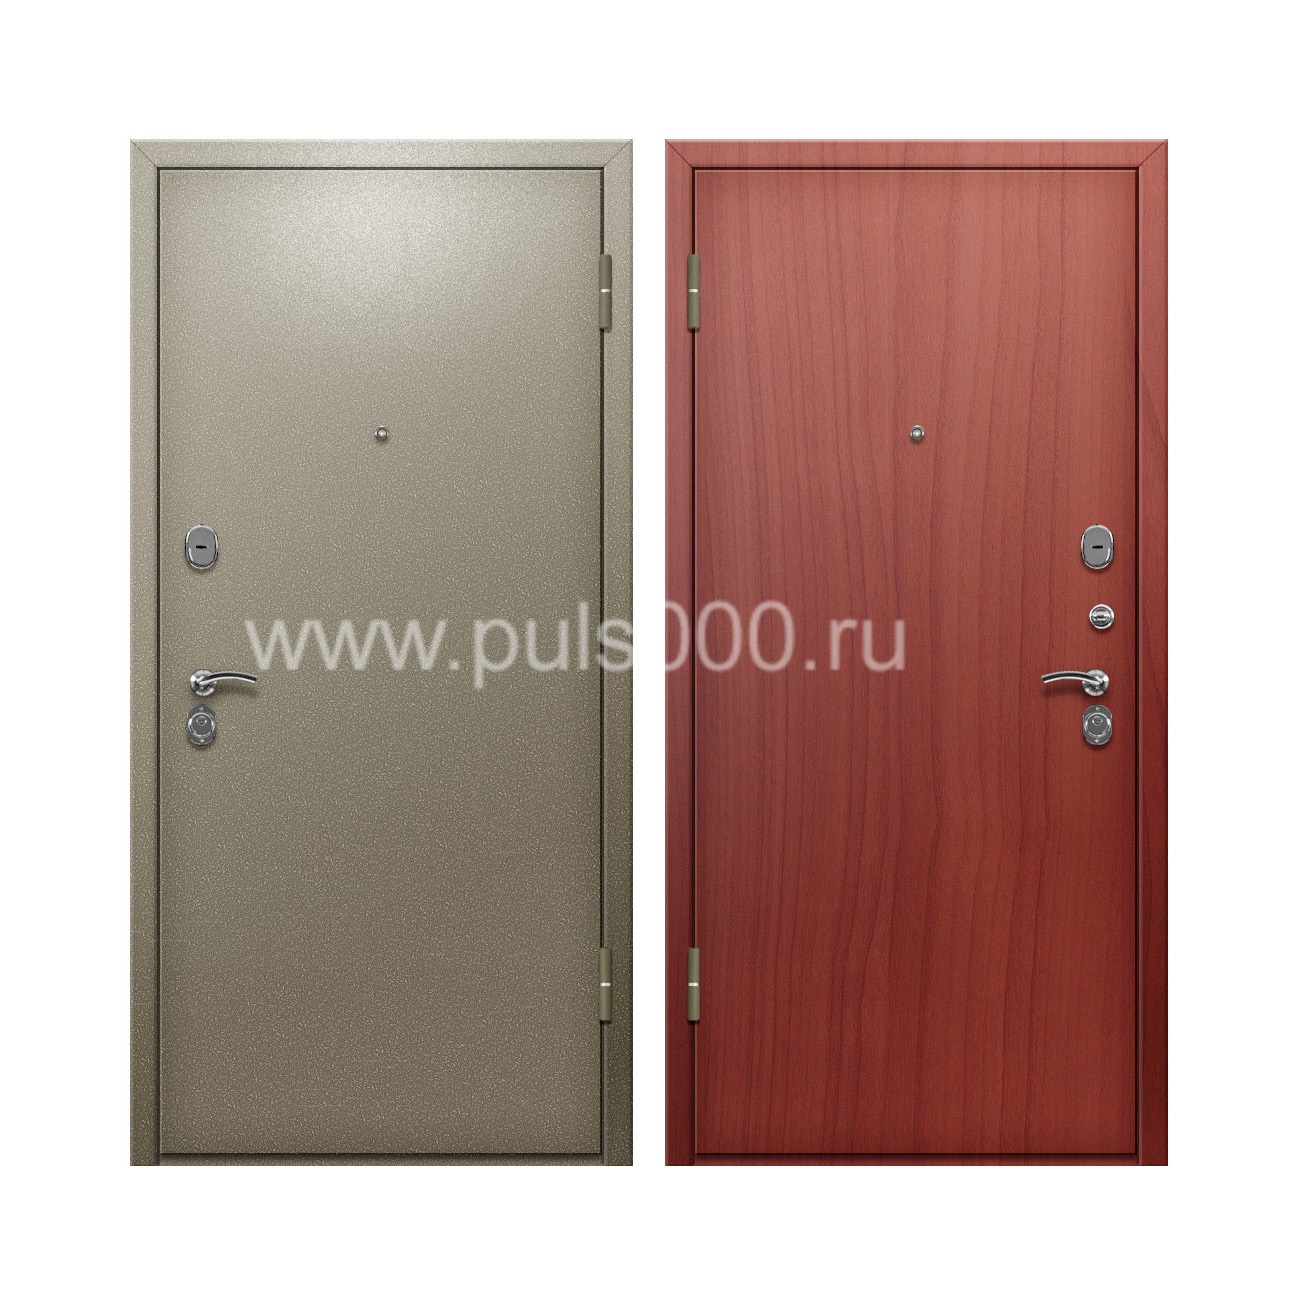 Входная дверь с порошковым окрасом и ламинатом внутри PR-69, цена 20 000  руб.